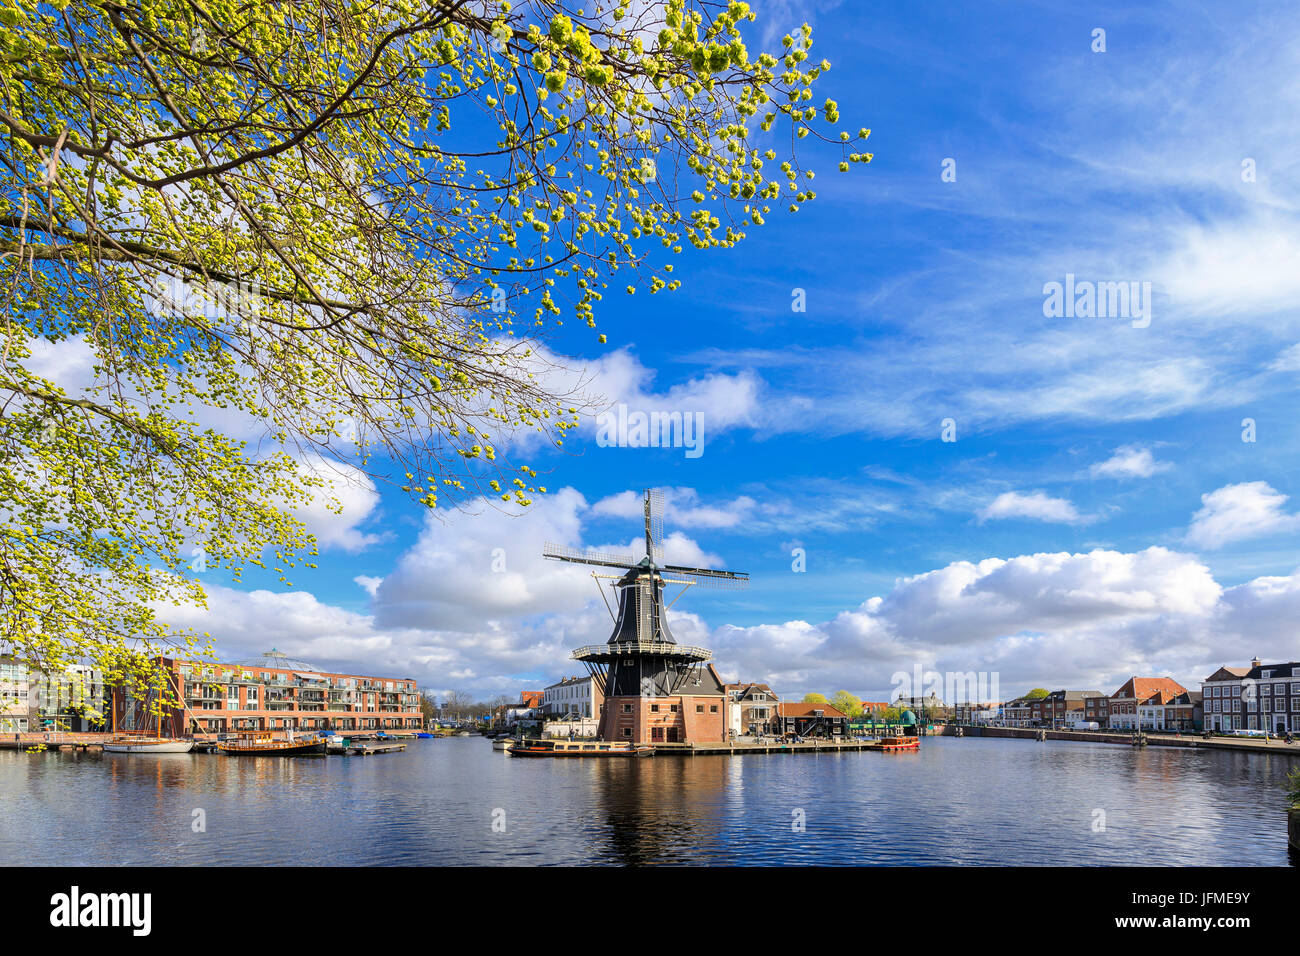 Les branches d'arbres encadrent la Moulin De Adriaan reflétée dans un canal de la rivière Spaarne Haarlem aux Pays-Bas Hollande du Nord Europe Banque D'Images